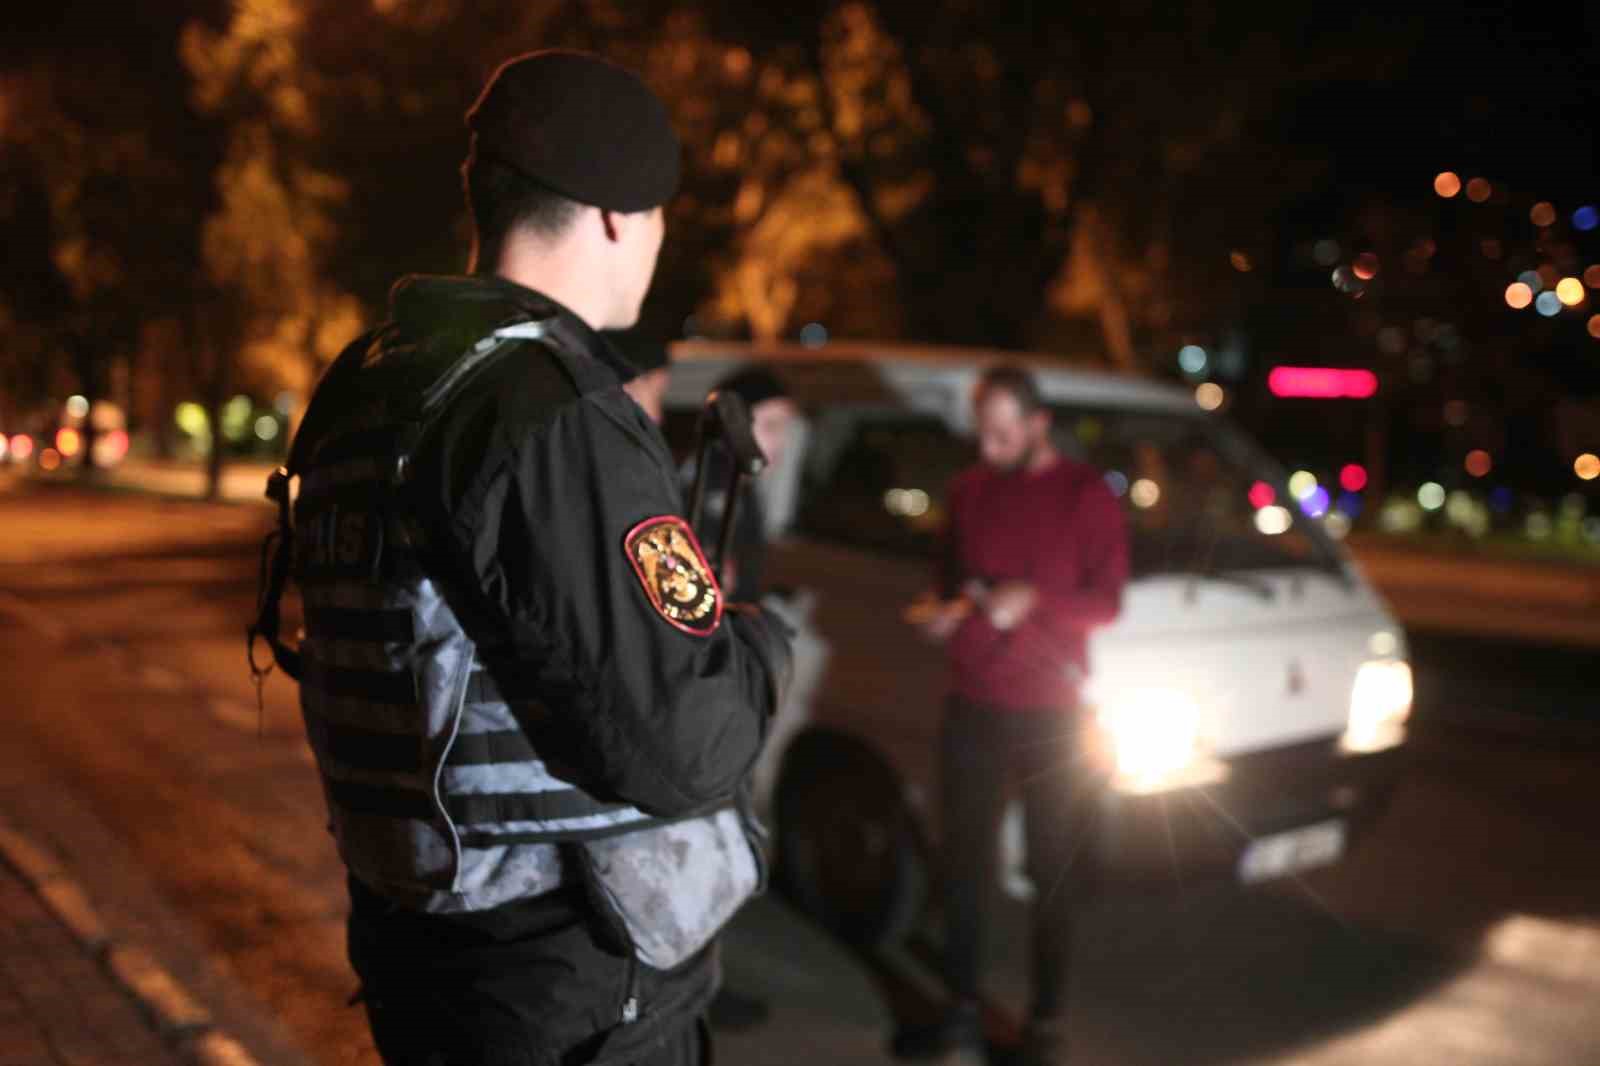 Bursa’da metruk bina ve ara sokak operasyonu...12 kişi yakalandı